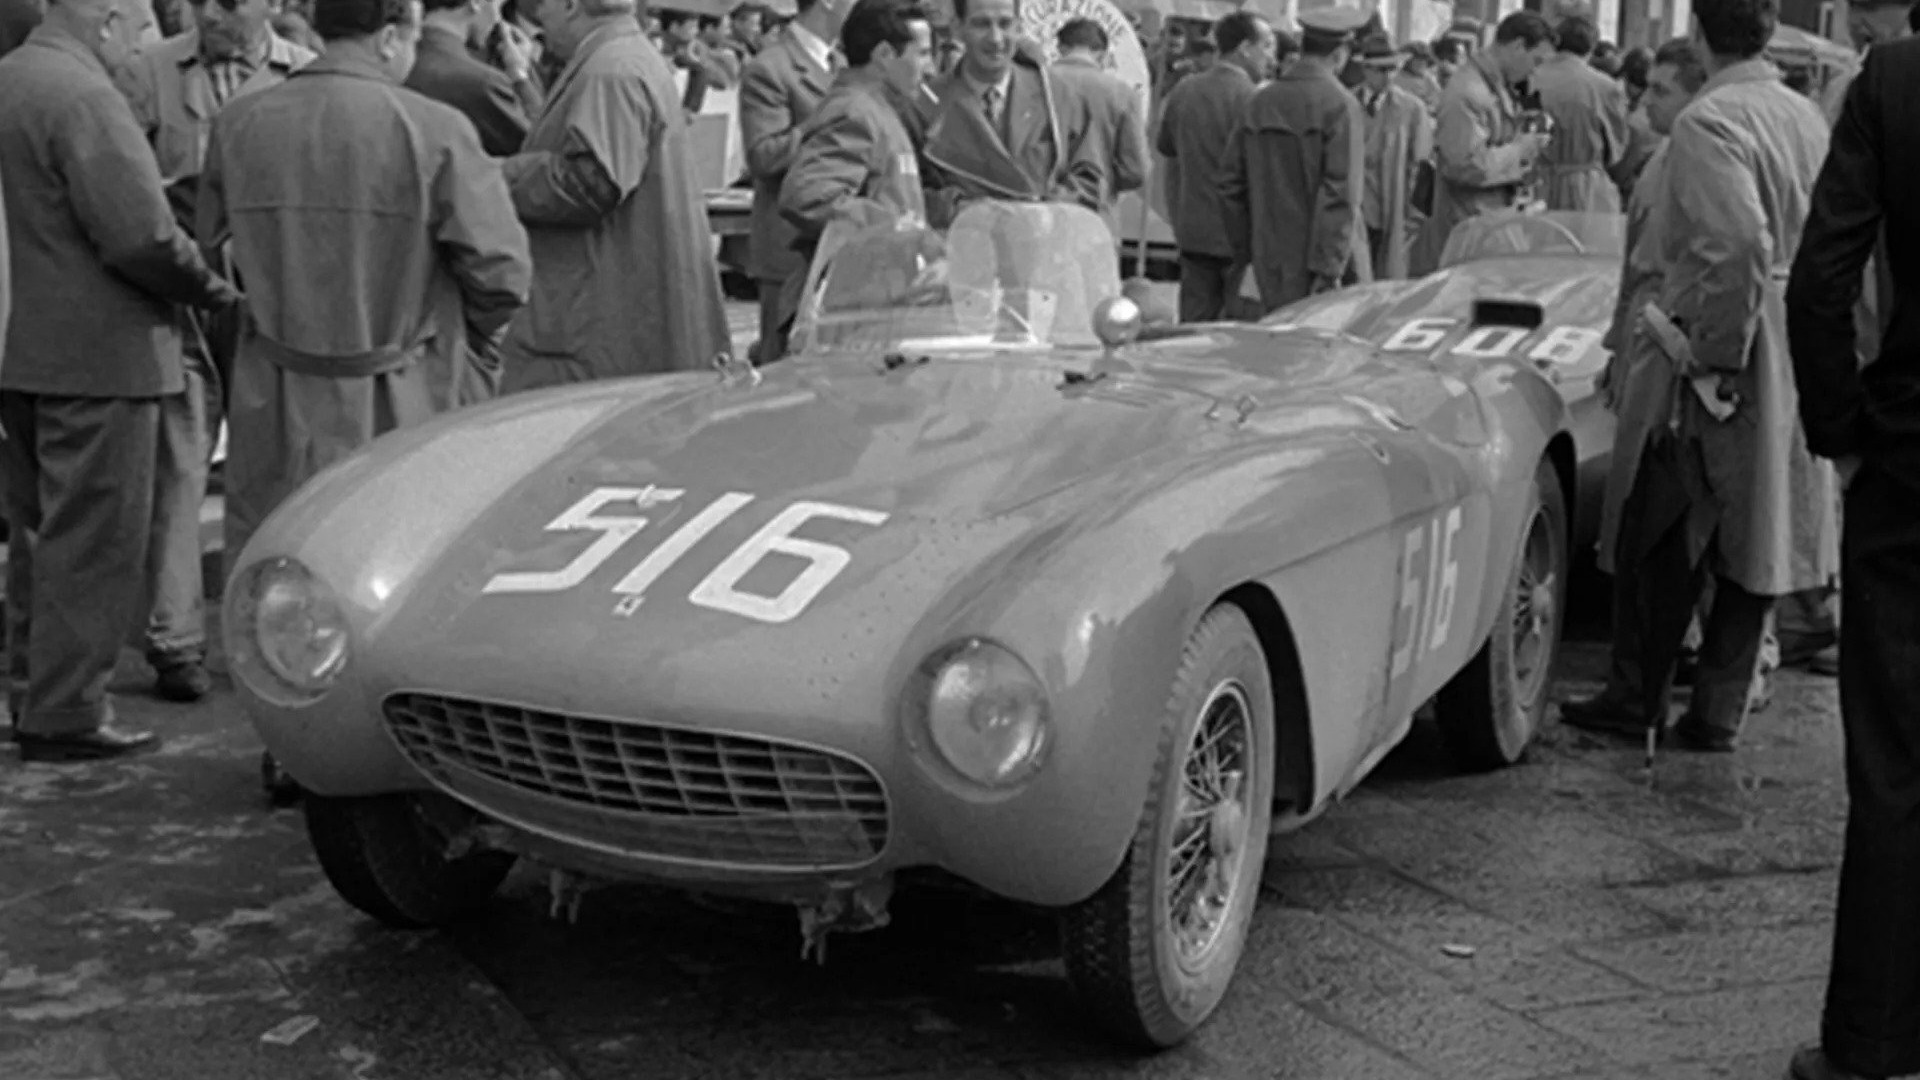 Bilen i all sin prakt klar for Mille Miglia i 1954 med det opprinnelige karosseriet fra Pinin Farina.